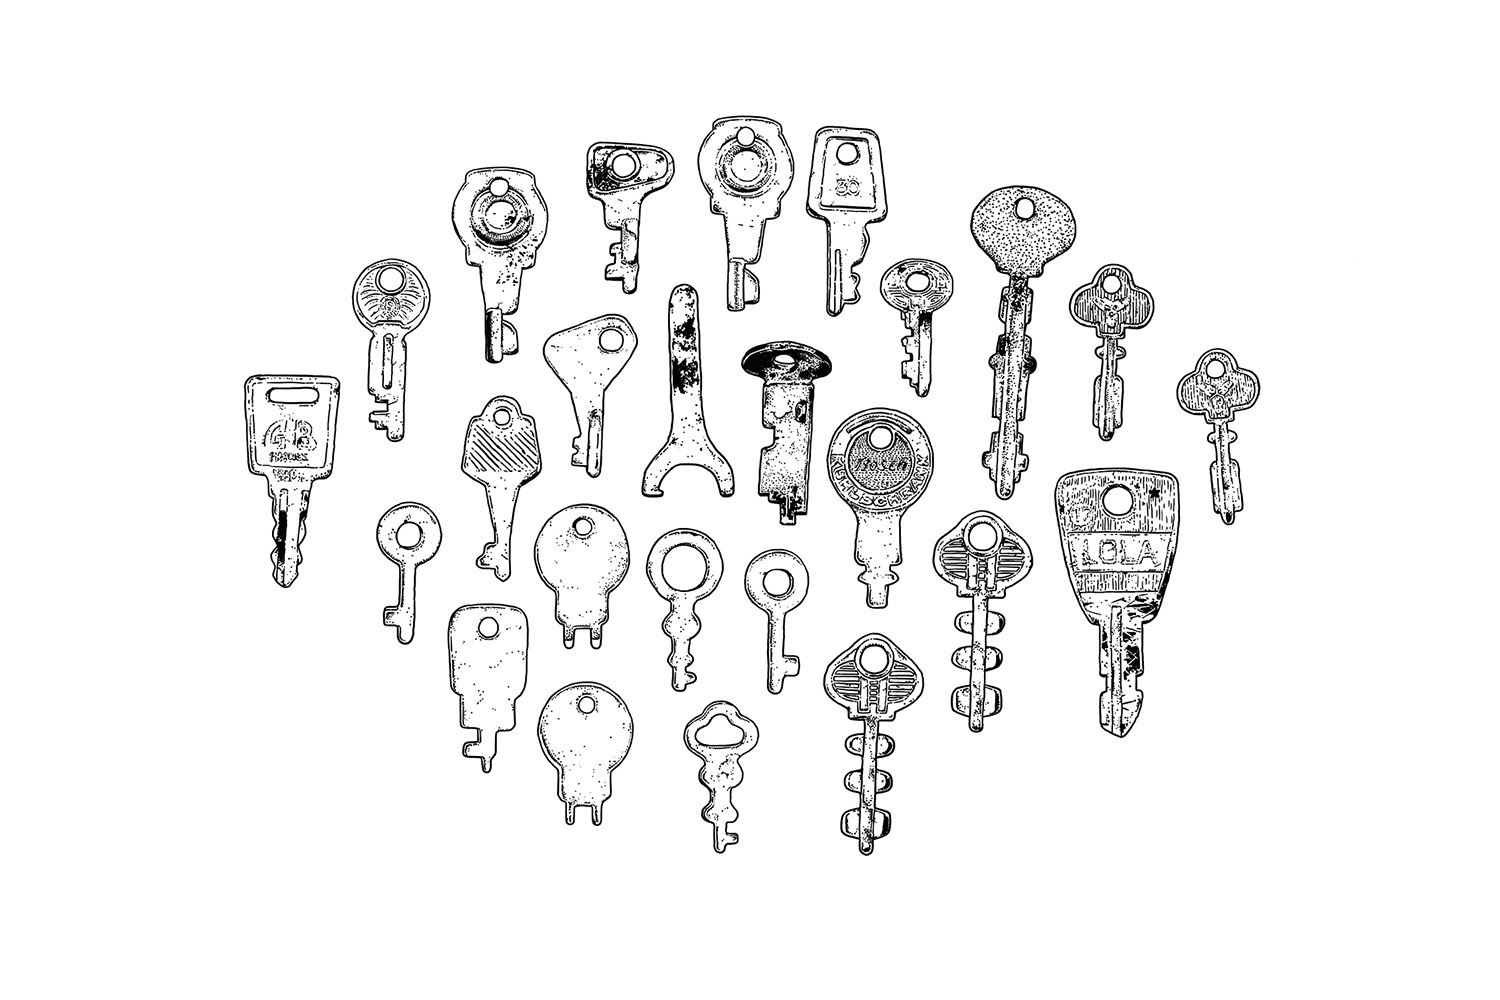 Konvolutserie „Schlüssel“, Schlüsselblatt 01 (Schliessfach-Schlüssel, Automaten-Schlüssel, Werkzeug-Schlüssel), 1-farbige Serigraphie auf Karton (handgedruckt), erste Auflage, 10 Stück, 2014, 60×40